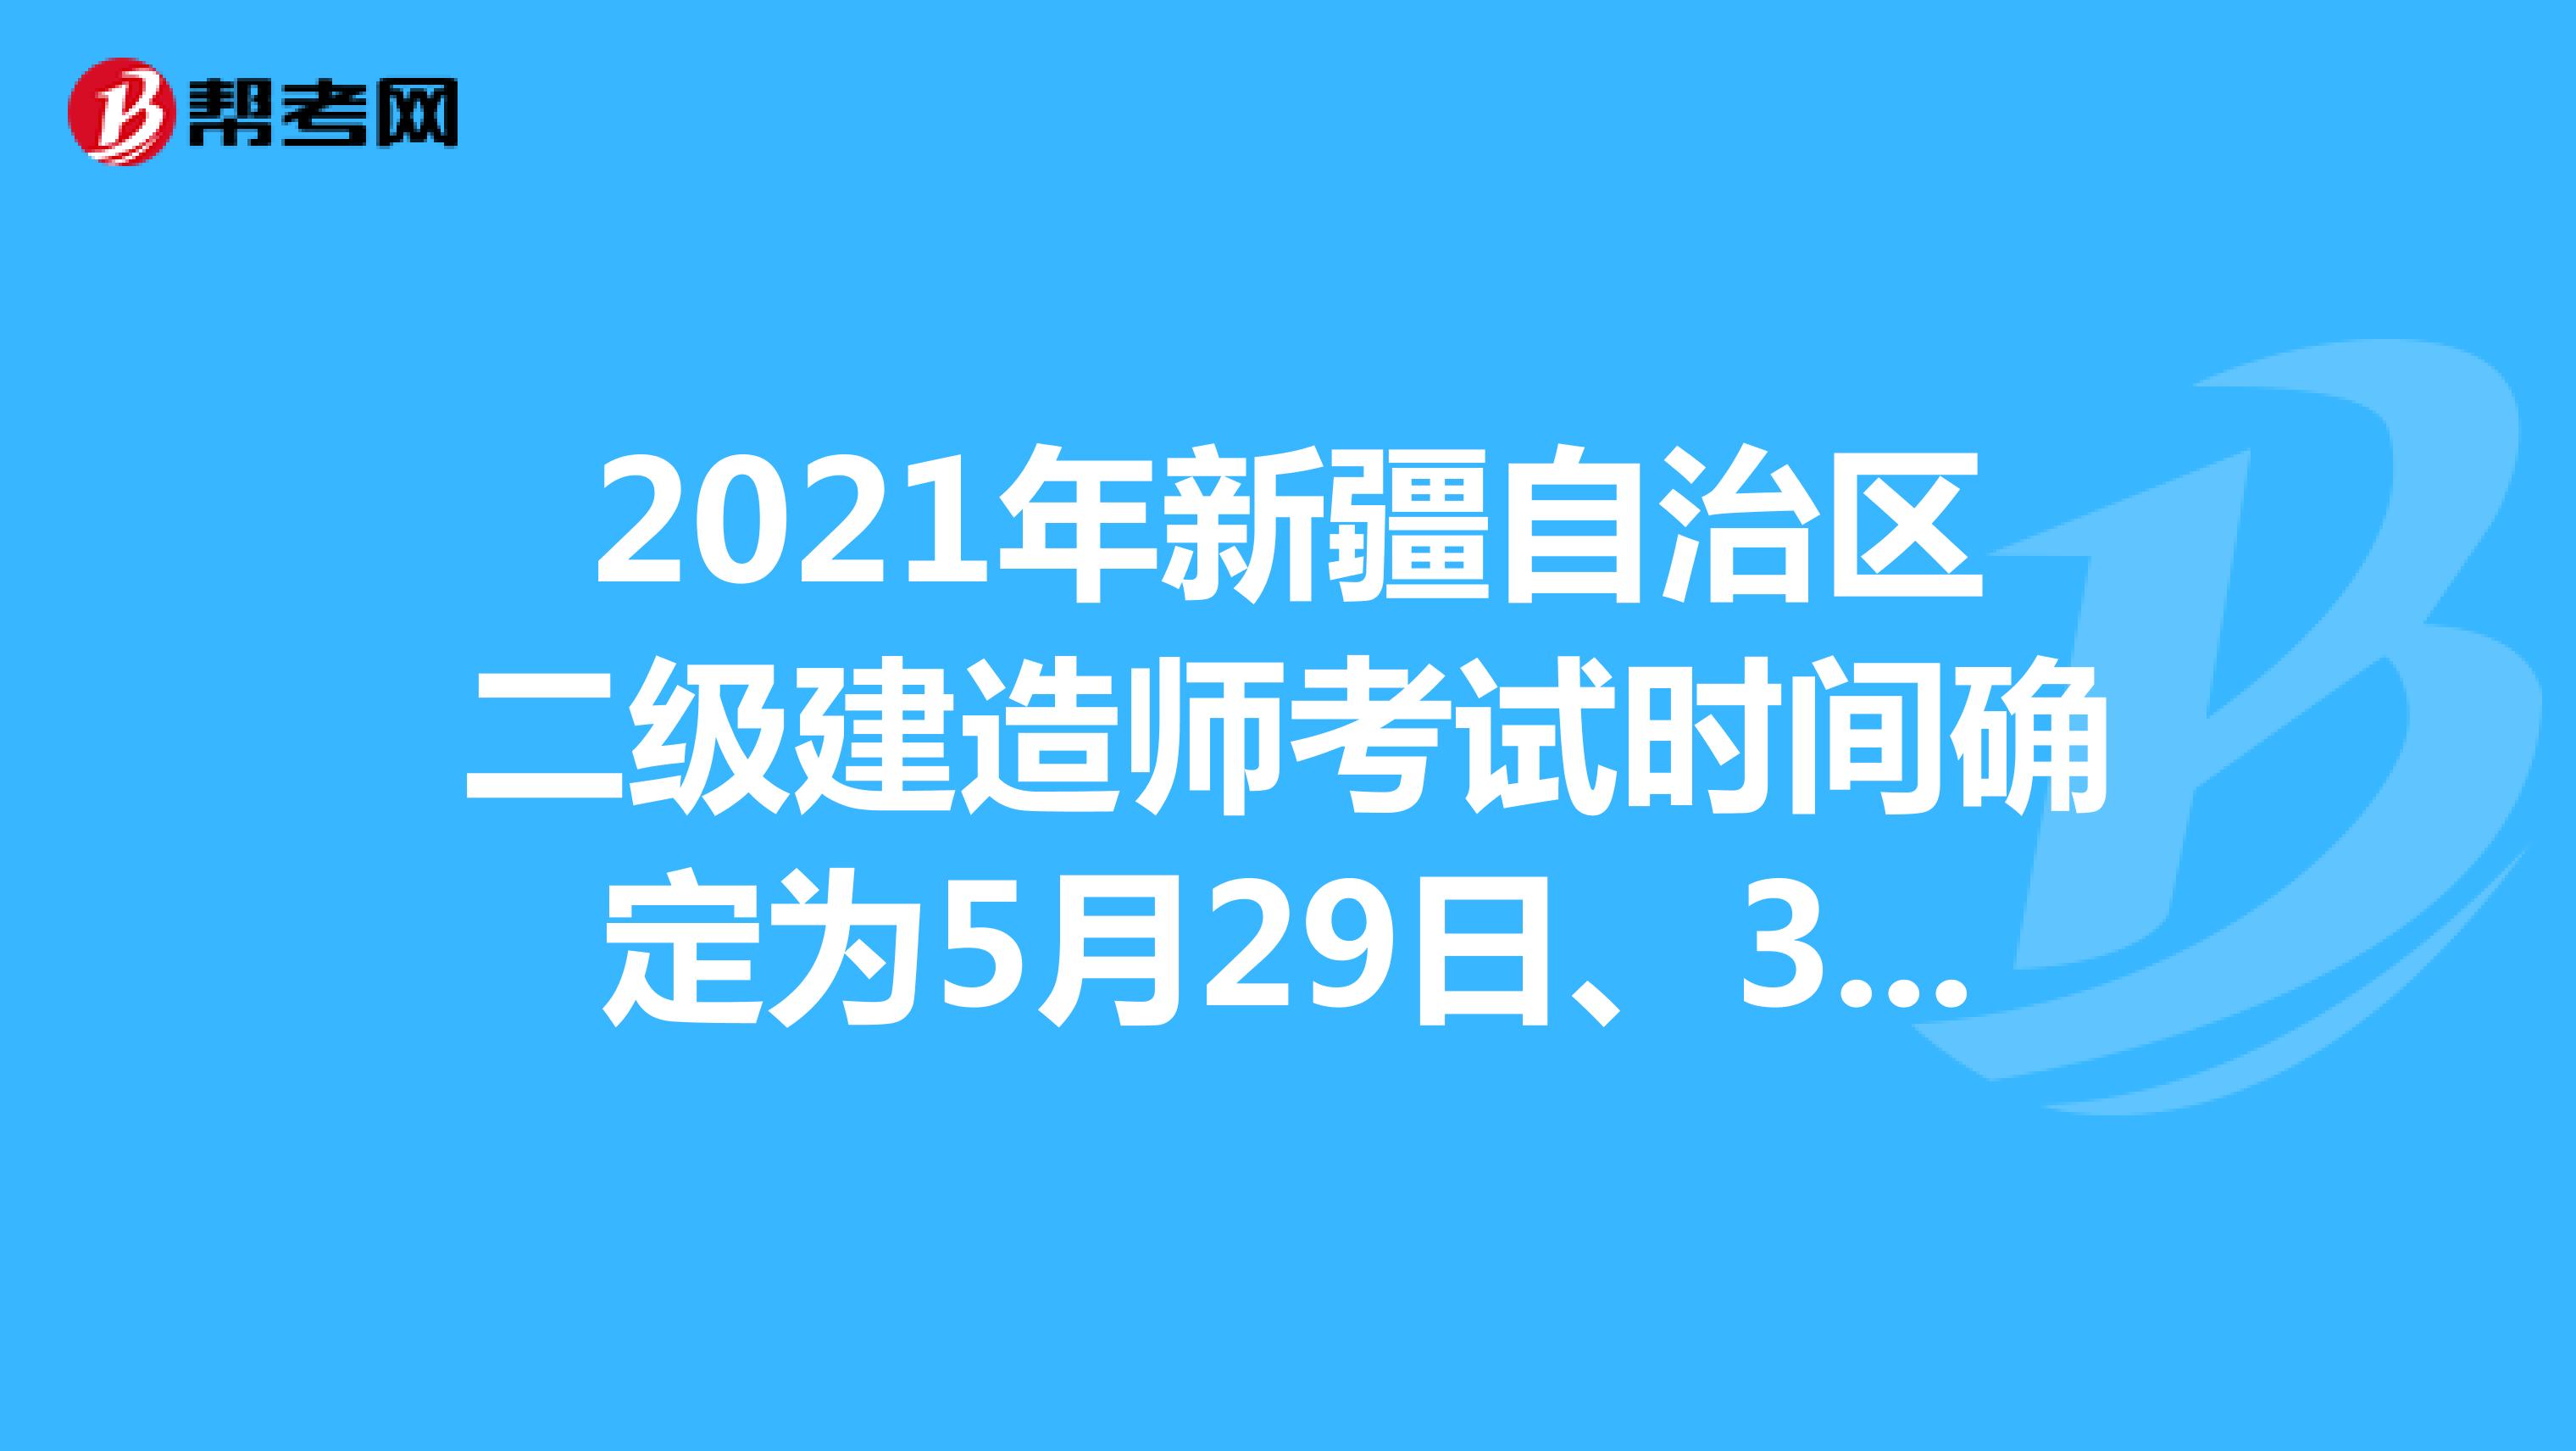 2021年新疆自治区二级建造师考试时间确定为5月29日、30日！